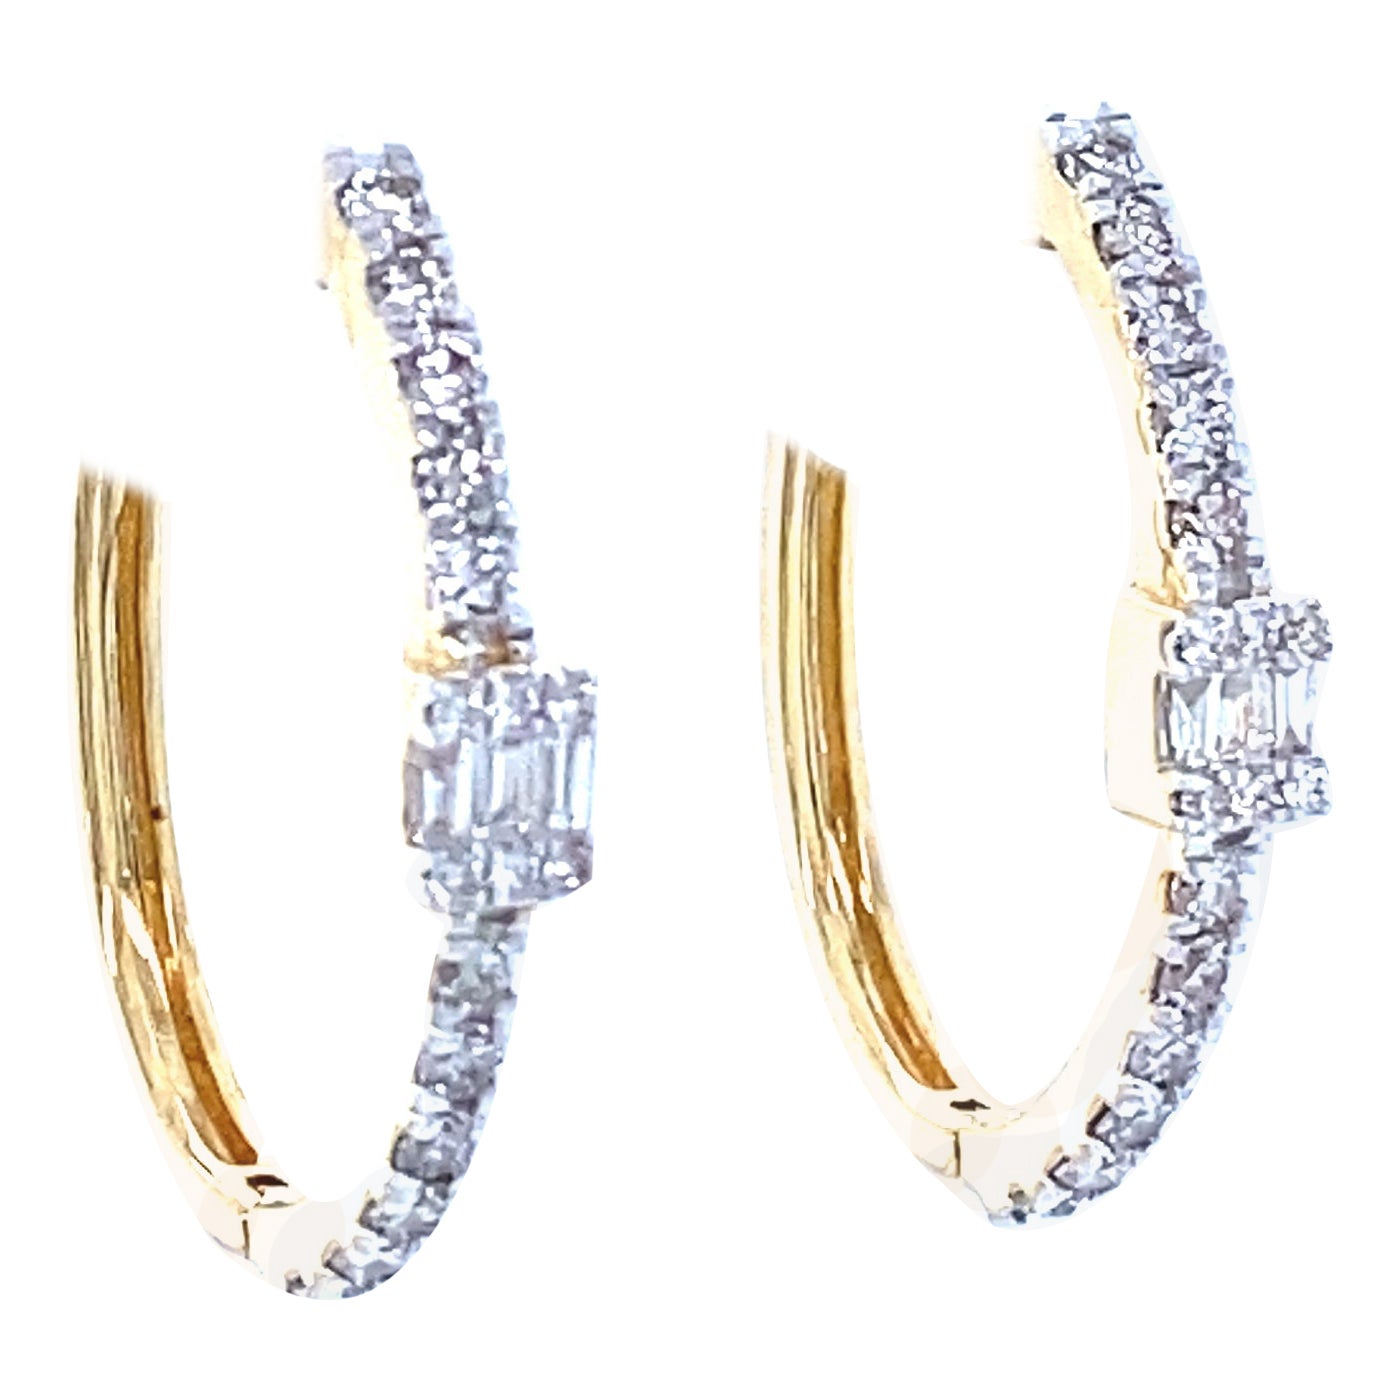 Boucles d'oreilles en or massif 18 carats avec diamants ronds et baguettes de forme ovale